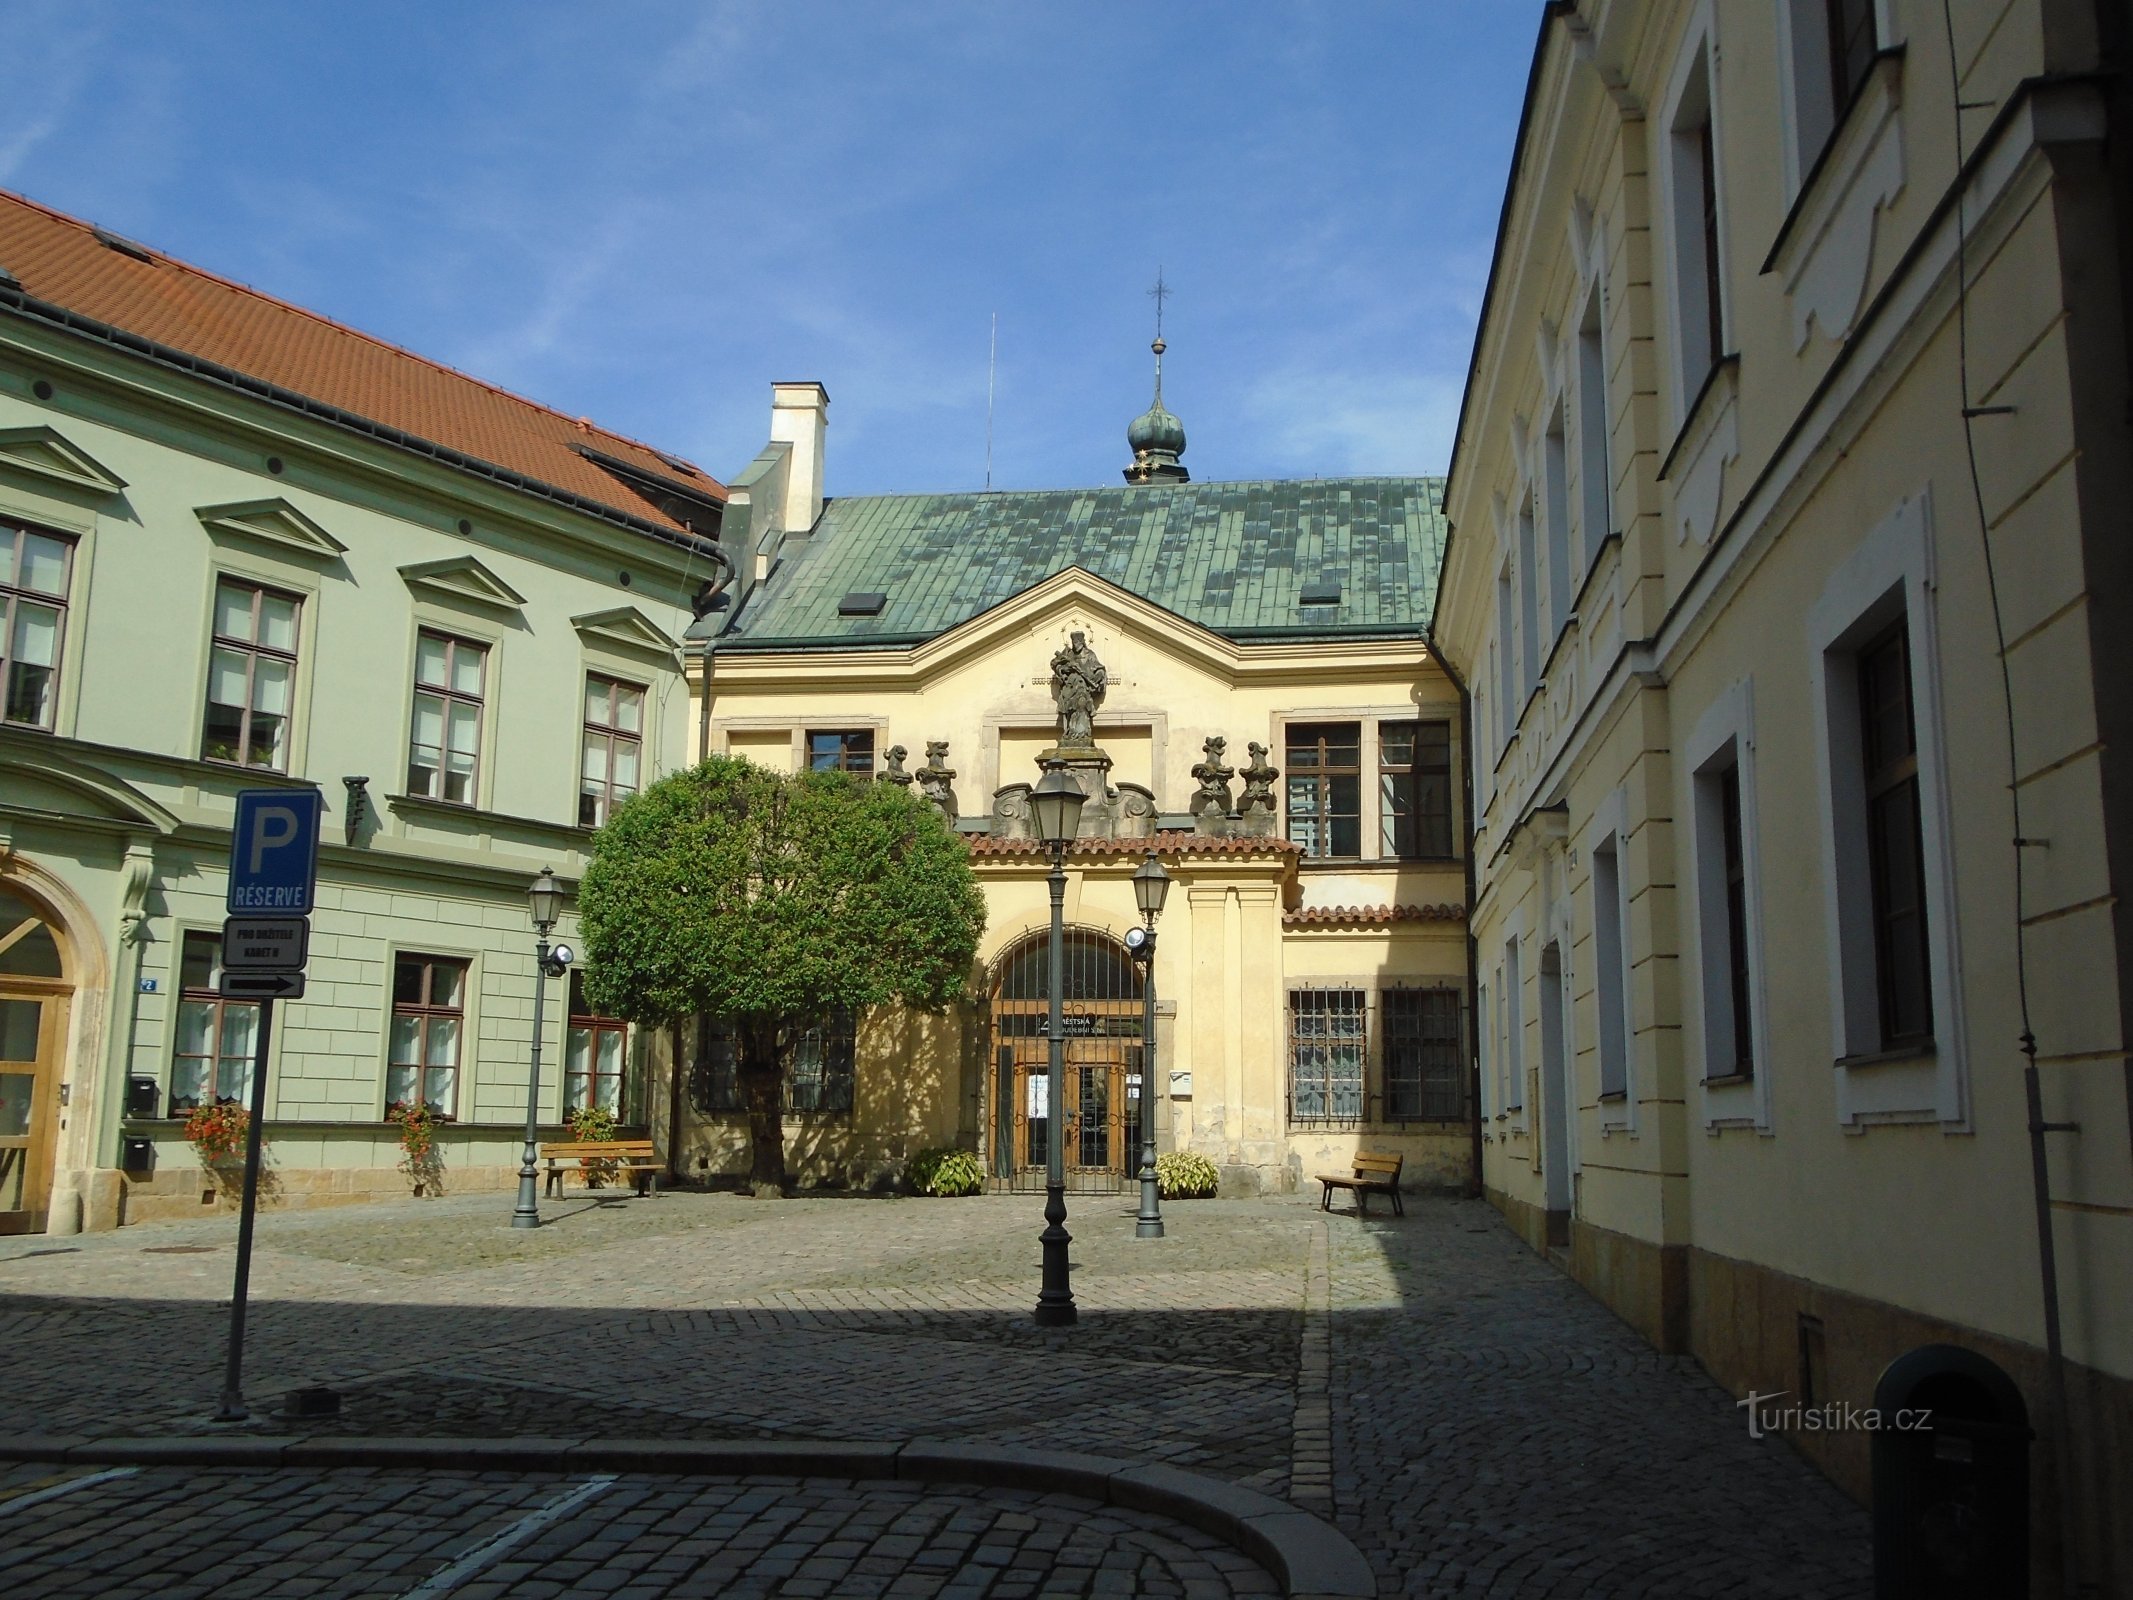 Al castello n. 91 (Hradec Králové, 16.9.2018/XNUMX/XNUMX)